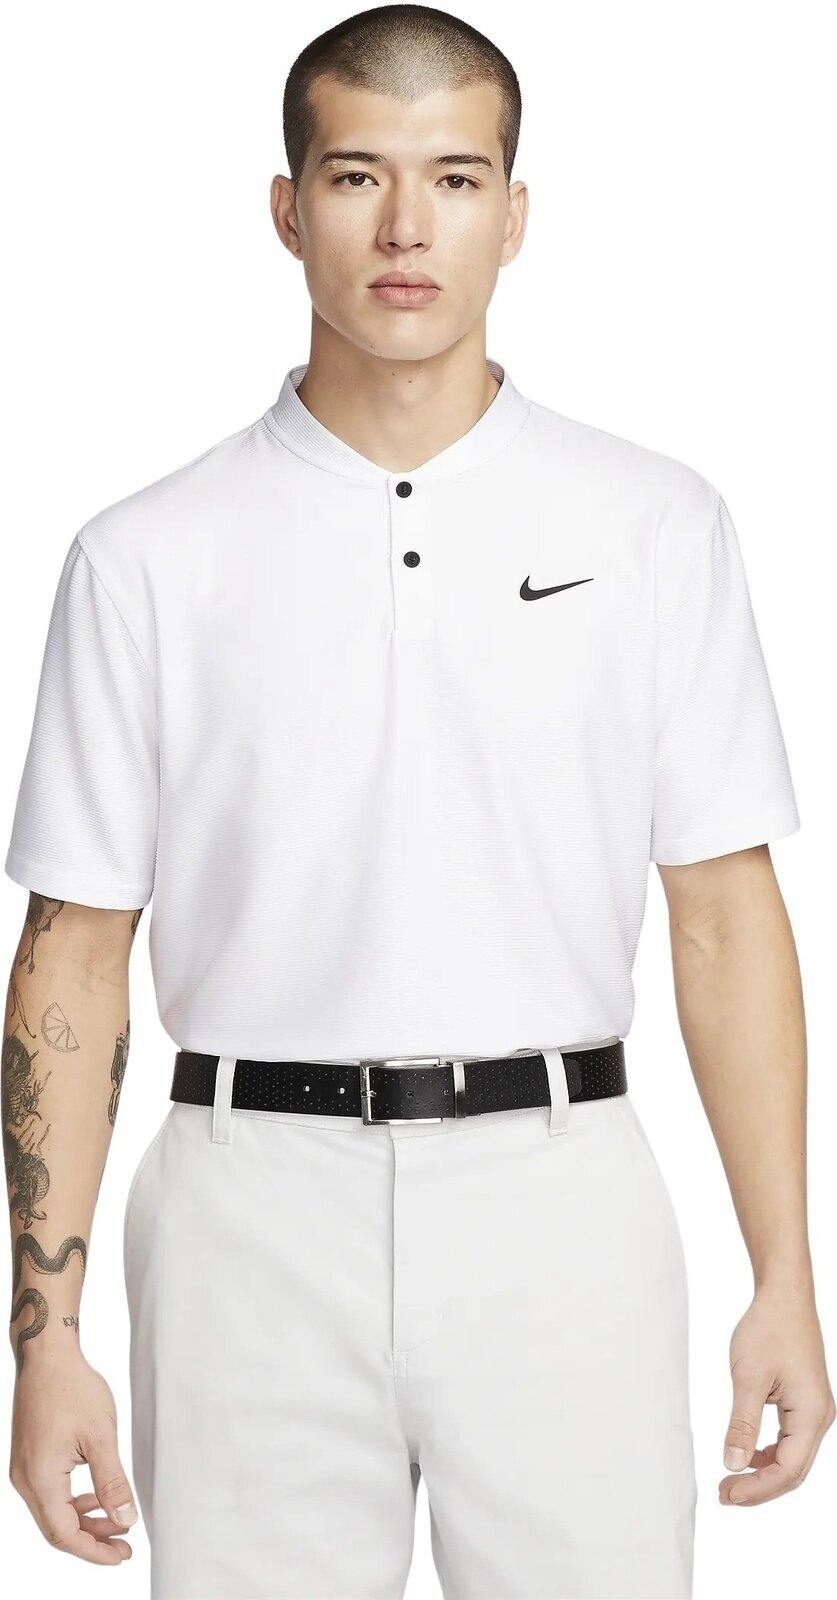 Polo majica Nike Dri-Fit Victory Texture Mens Polo White/Black M